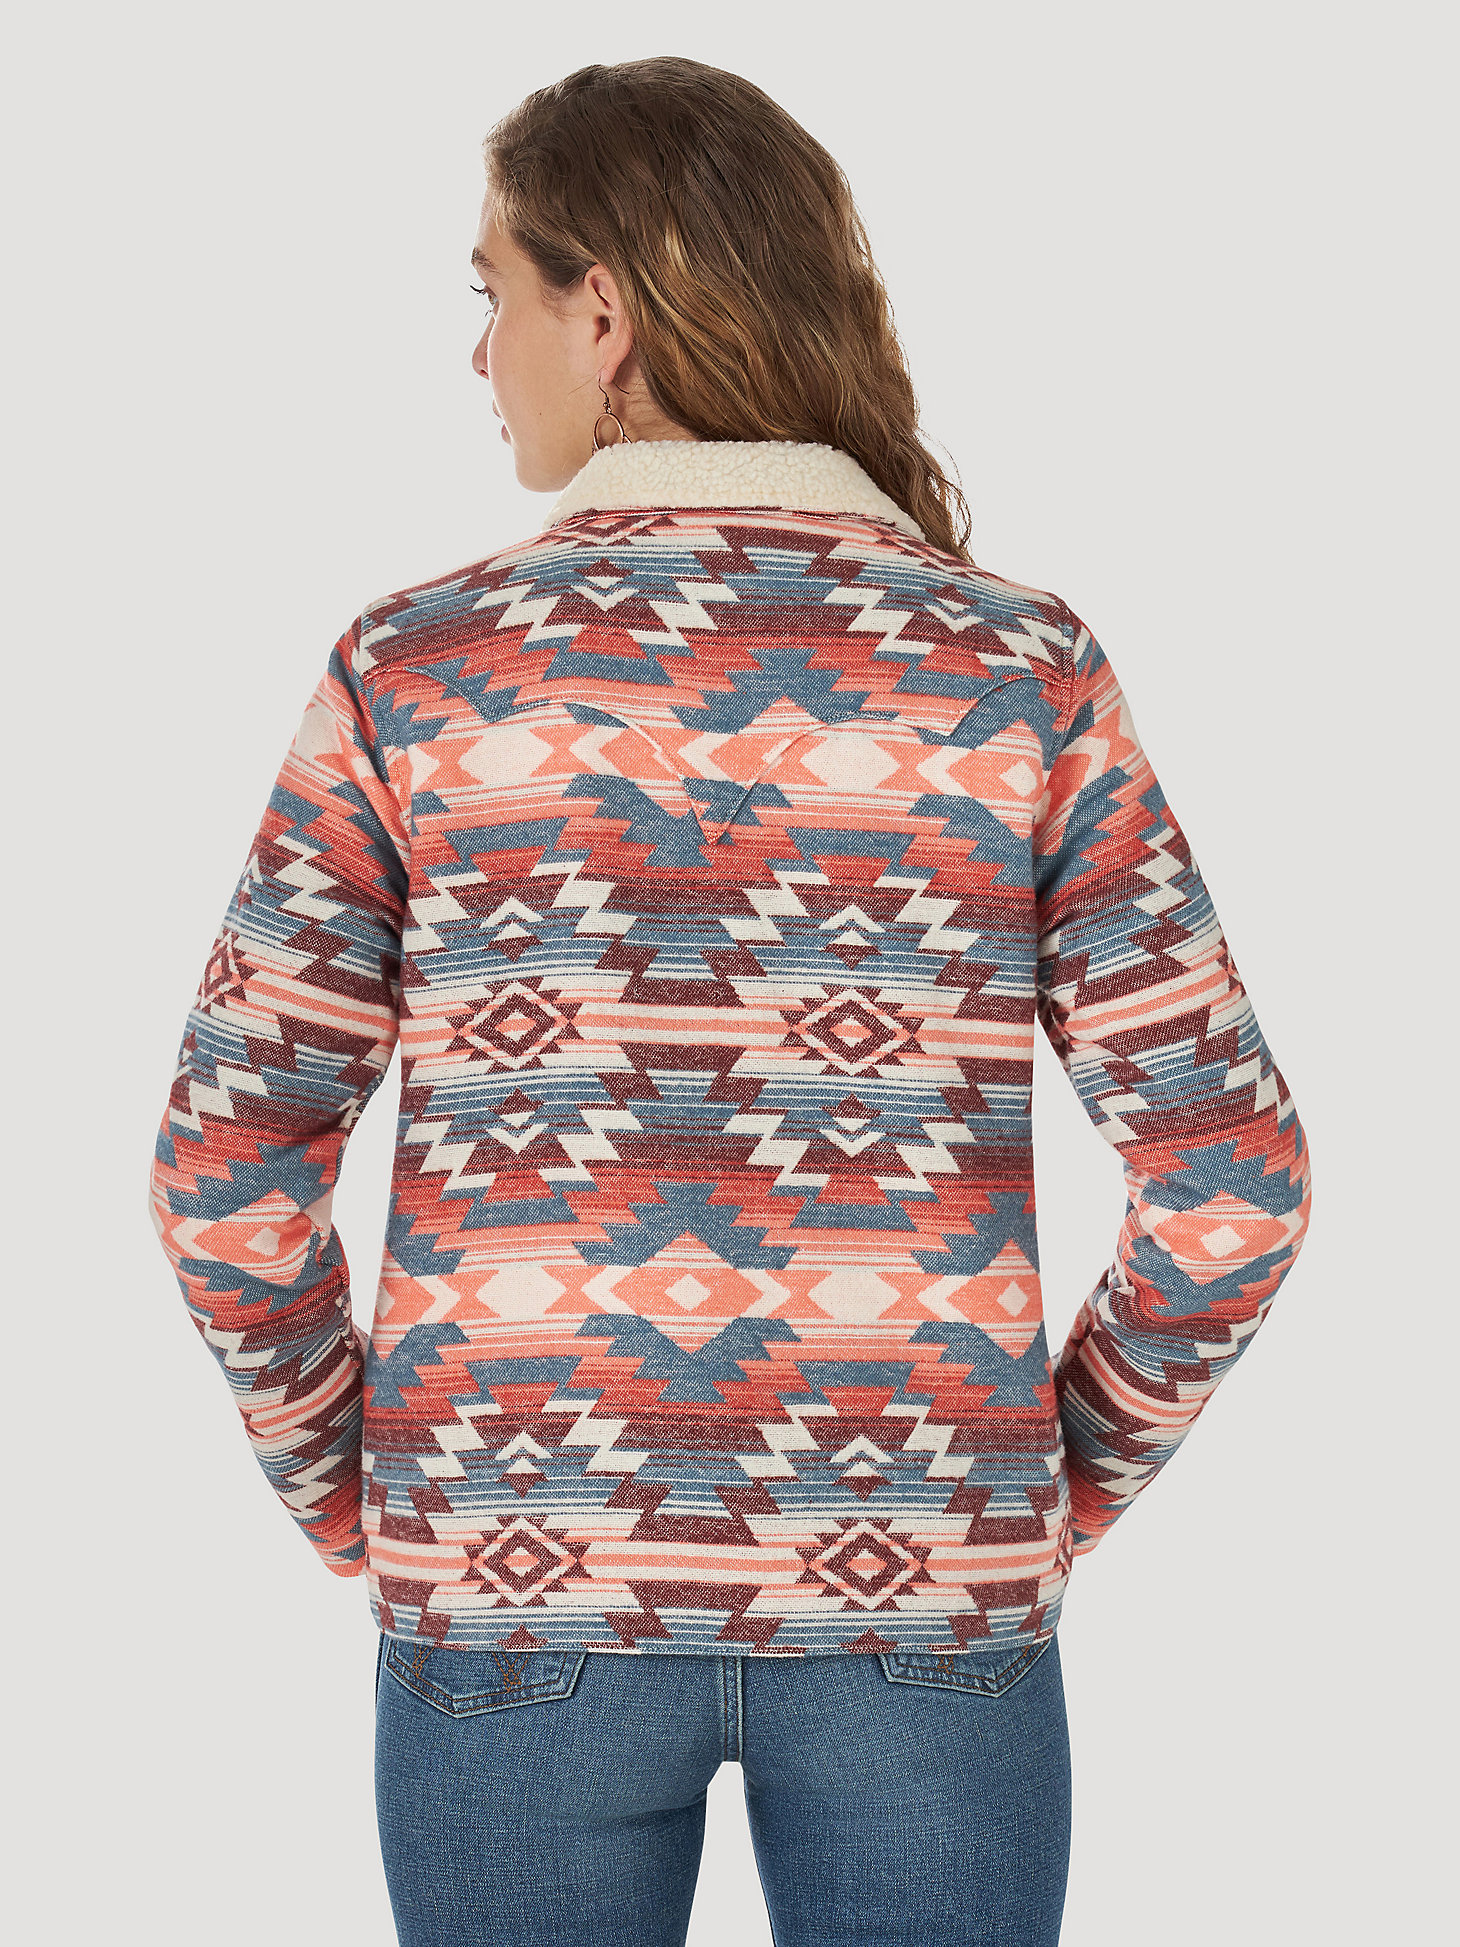 Women's Wrangler® Sherpa Lined Southwestern Print Jacket in multi alternative view 4